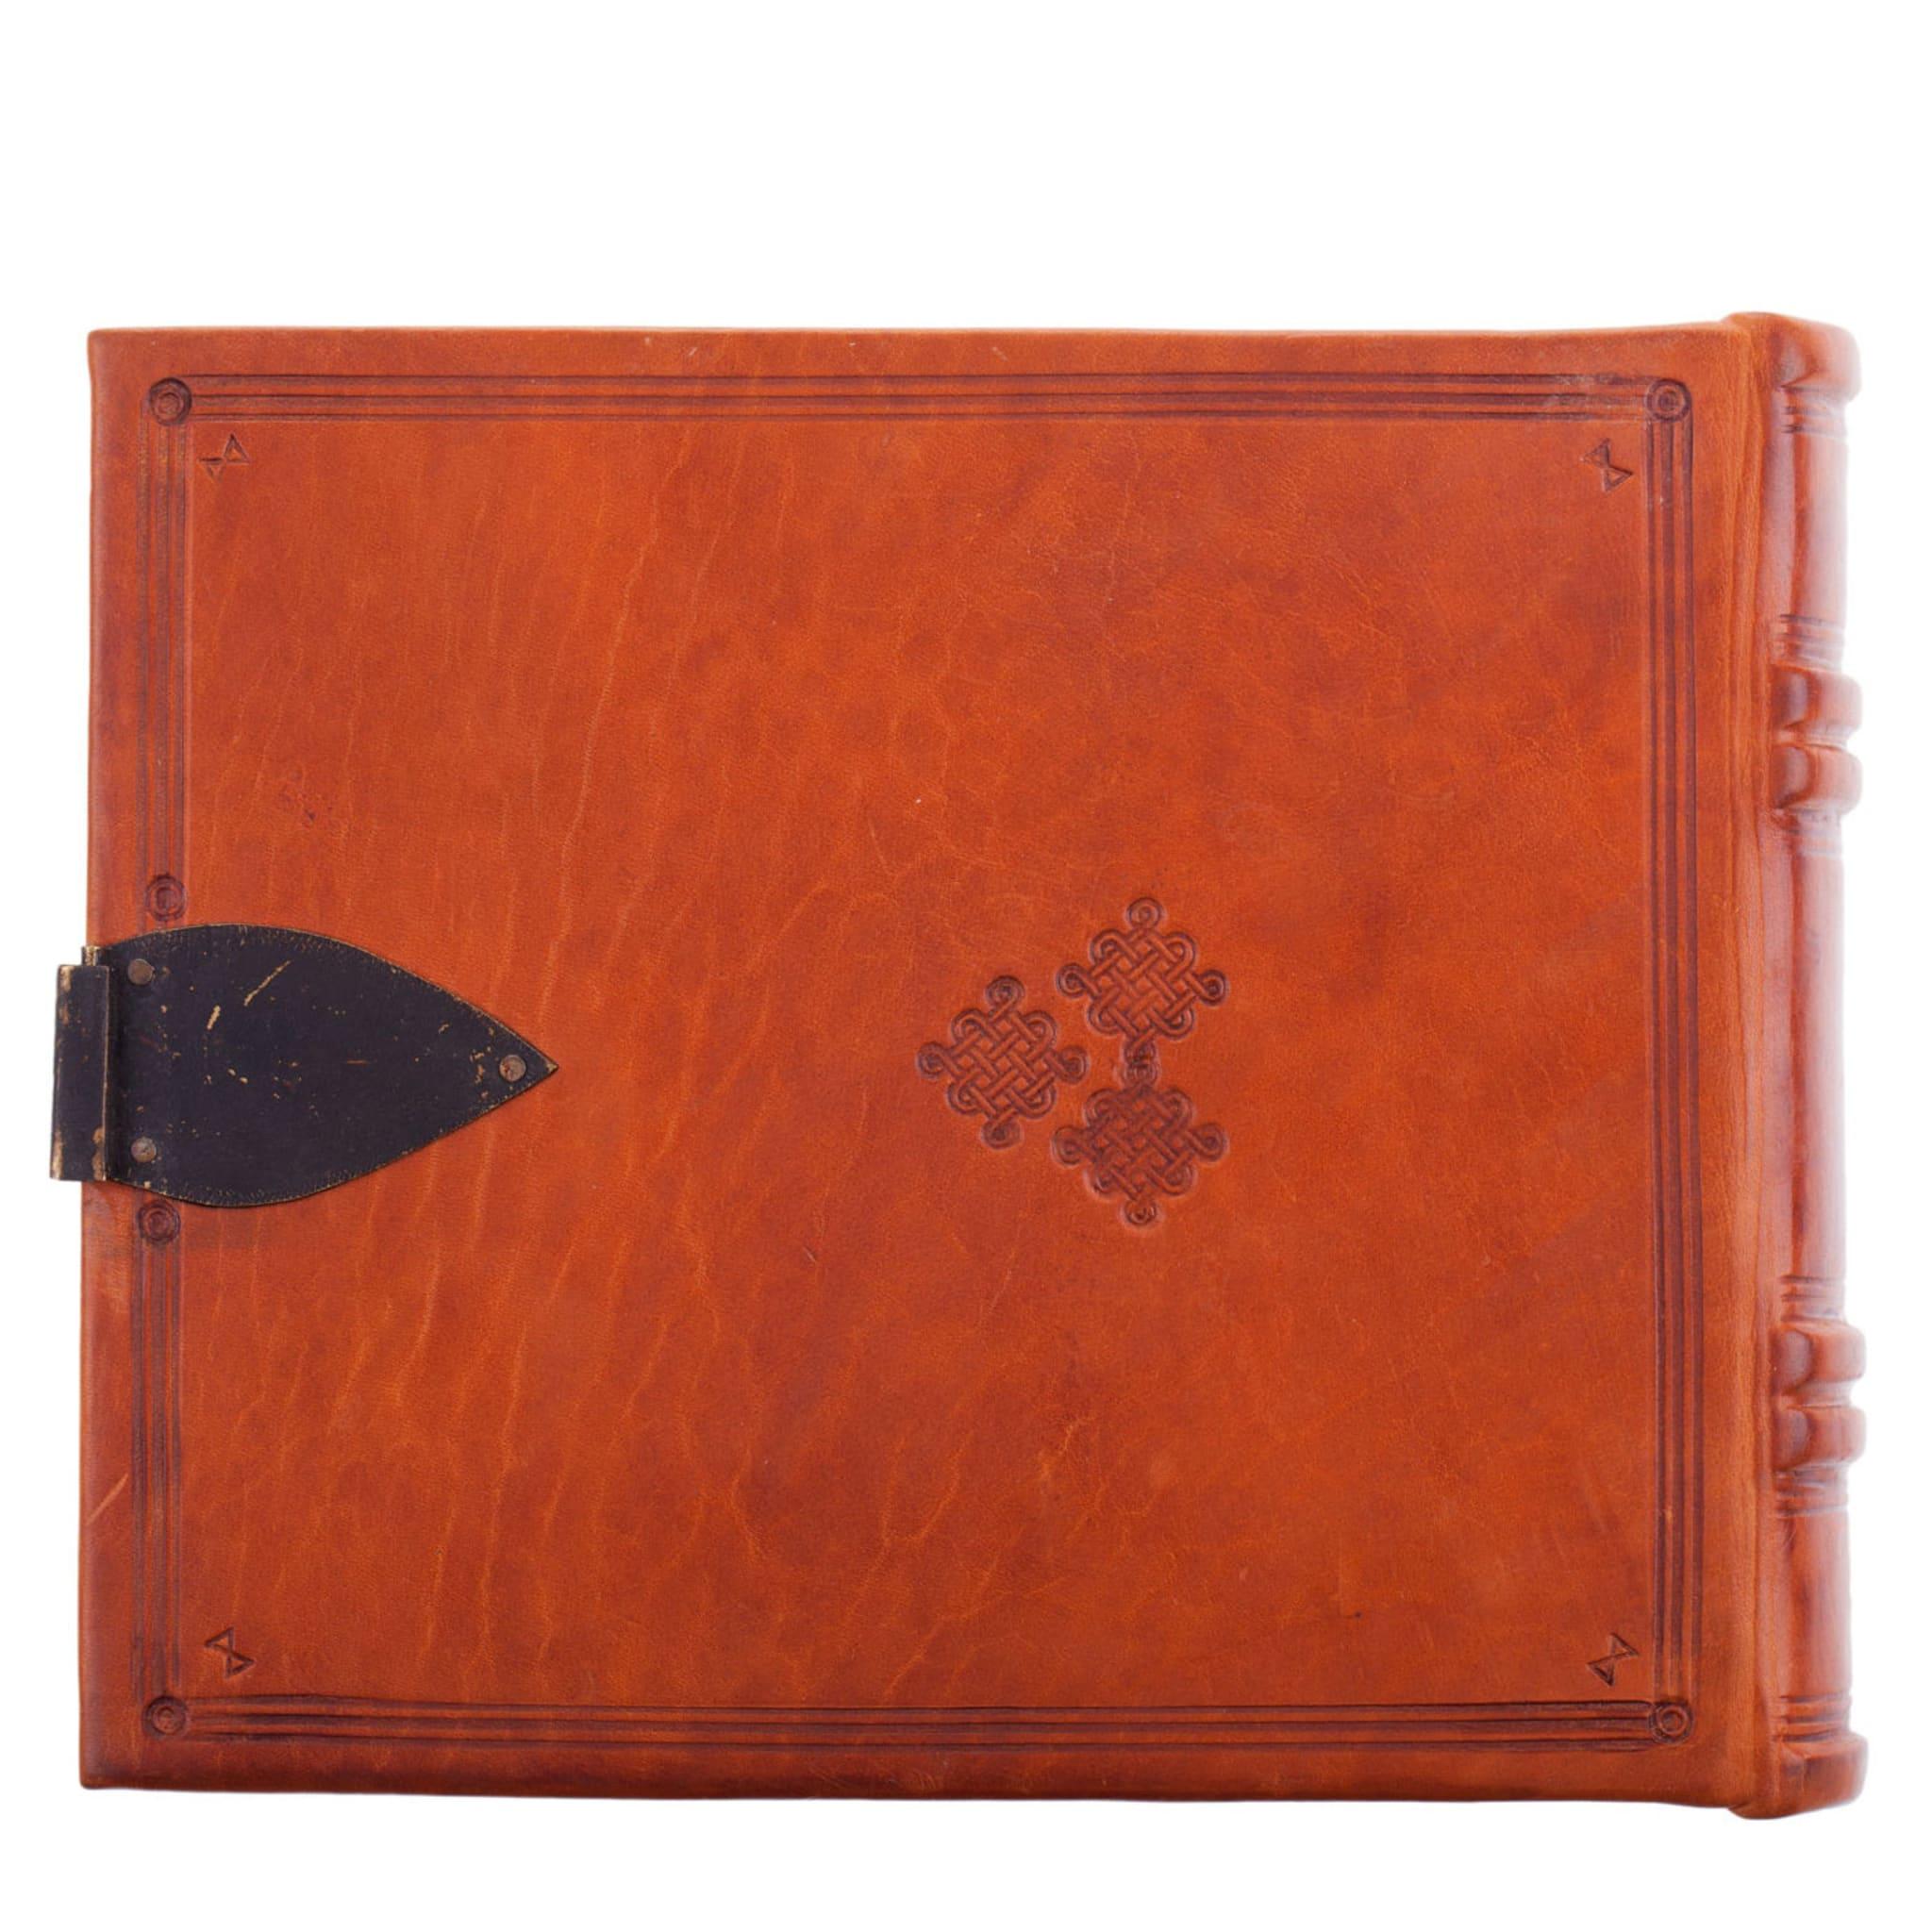 Dieses Buch des Florentiner Buchbinders Giannini ist im klösterlichen Stil gebunden, mit pflanzlich gegerbtem Leder und einer handgefertigten Messingschließe. Das handgenähte Innere enthält elfenbeinfarbenes Papier und ein einzigartiges marmoriertes